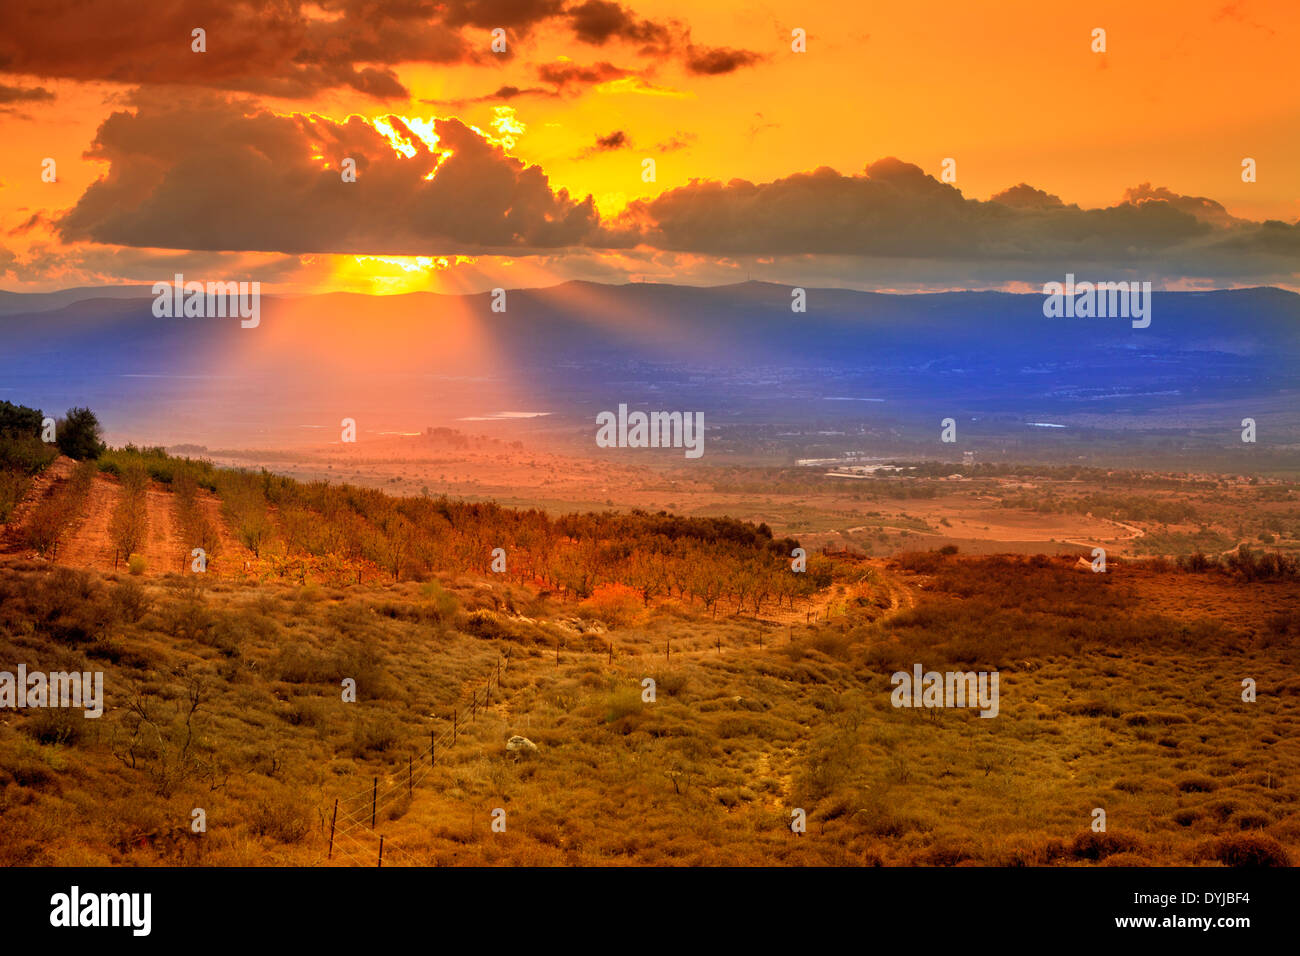 Sonnenuntergang im nördlichen Golanhöhen in Israel Stockfoto